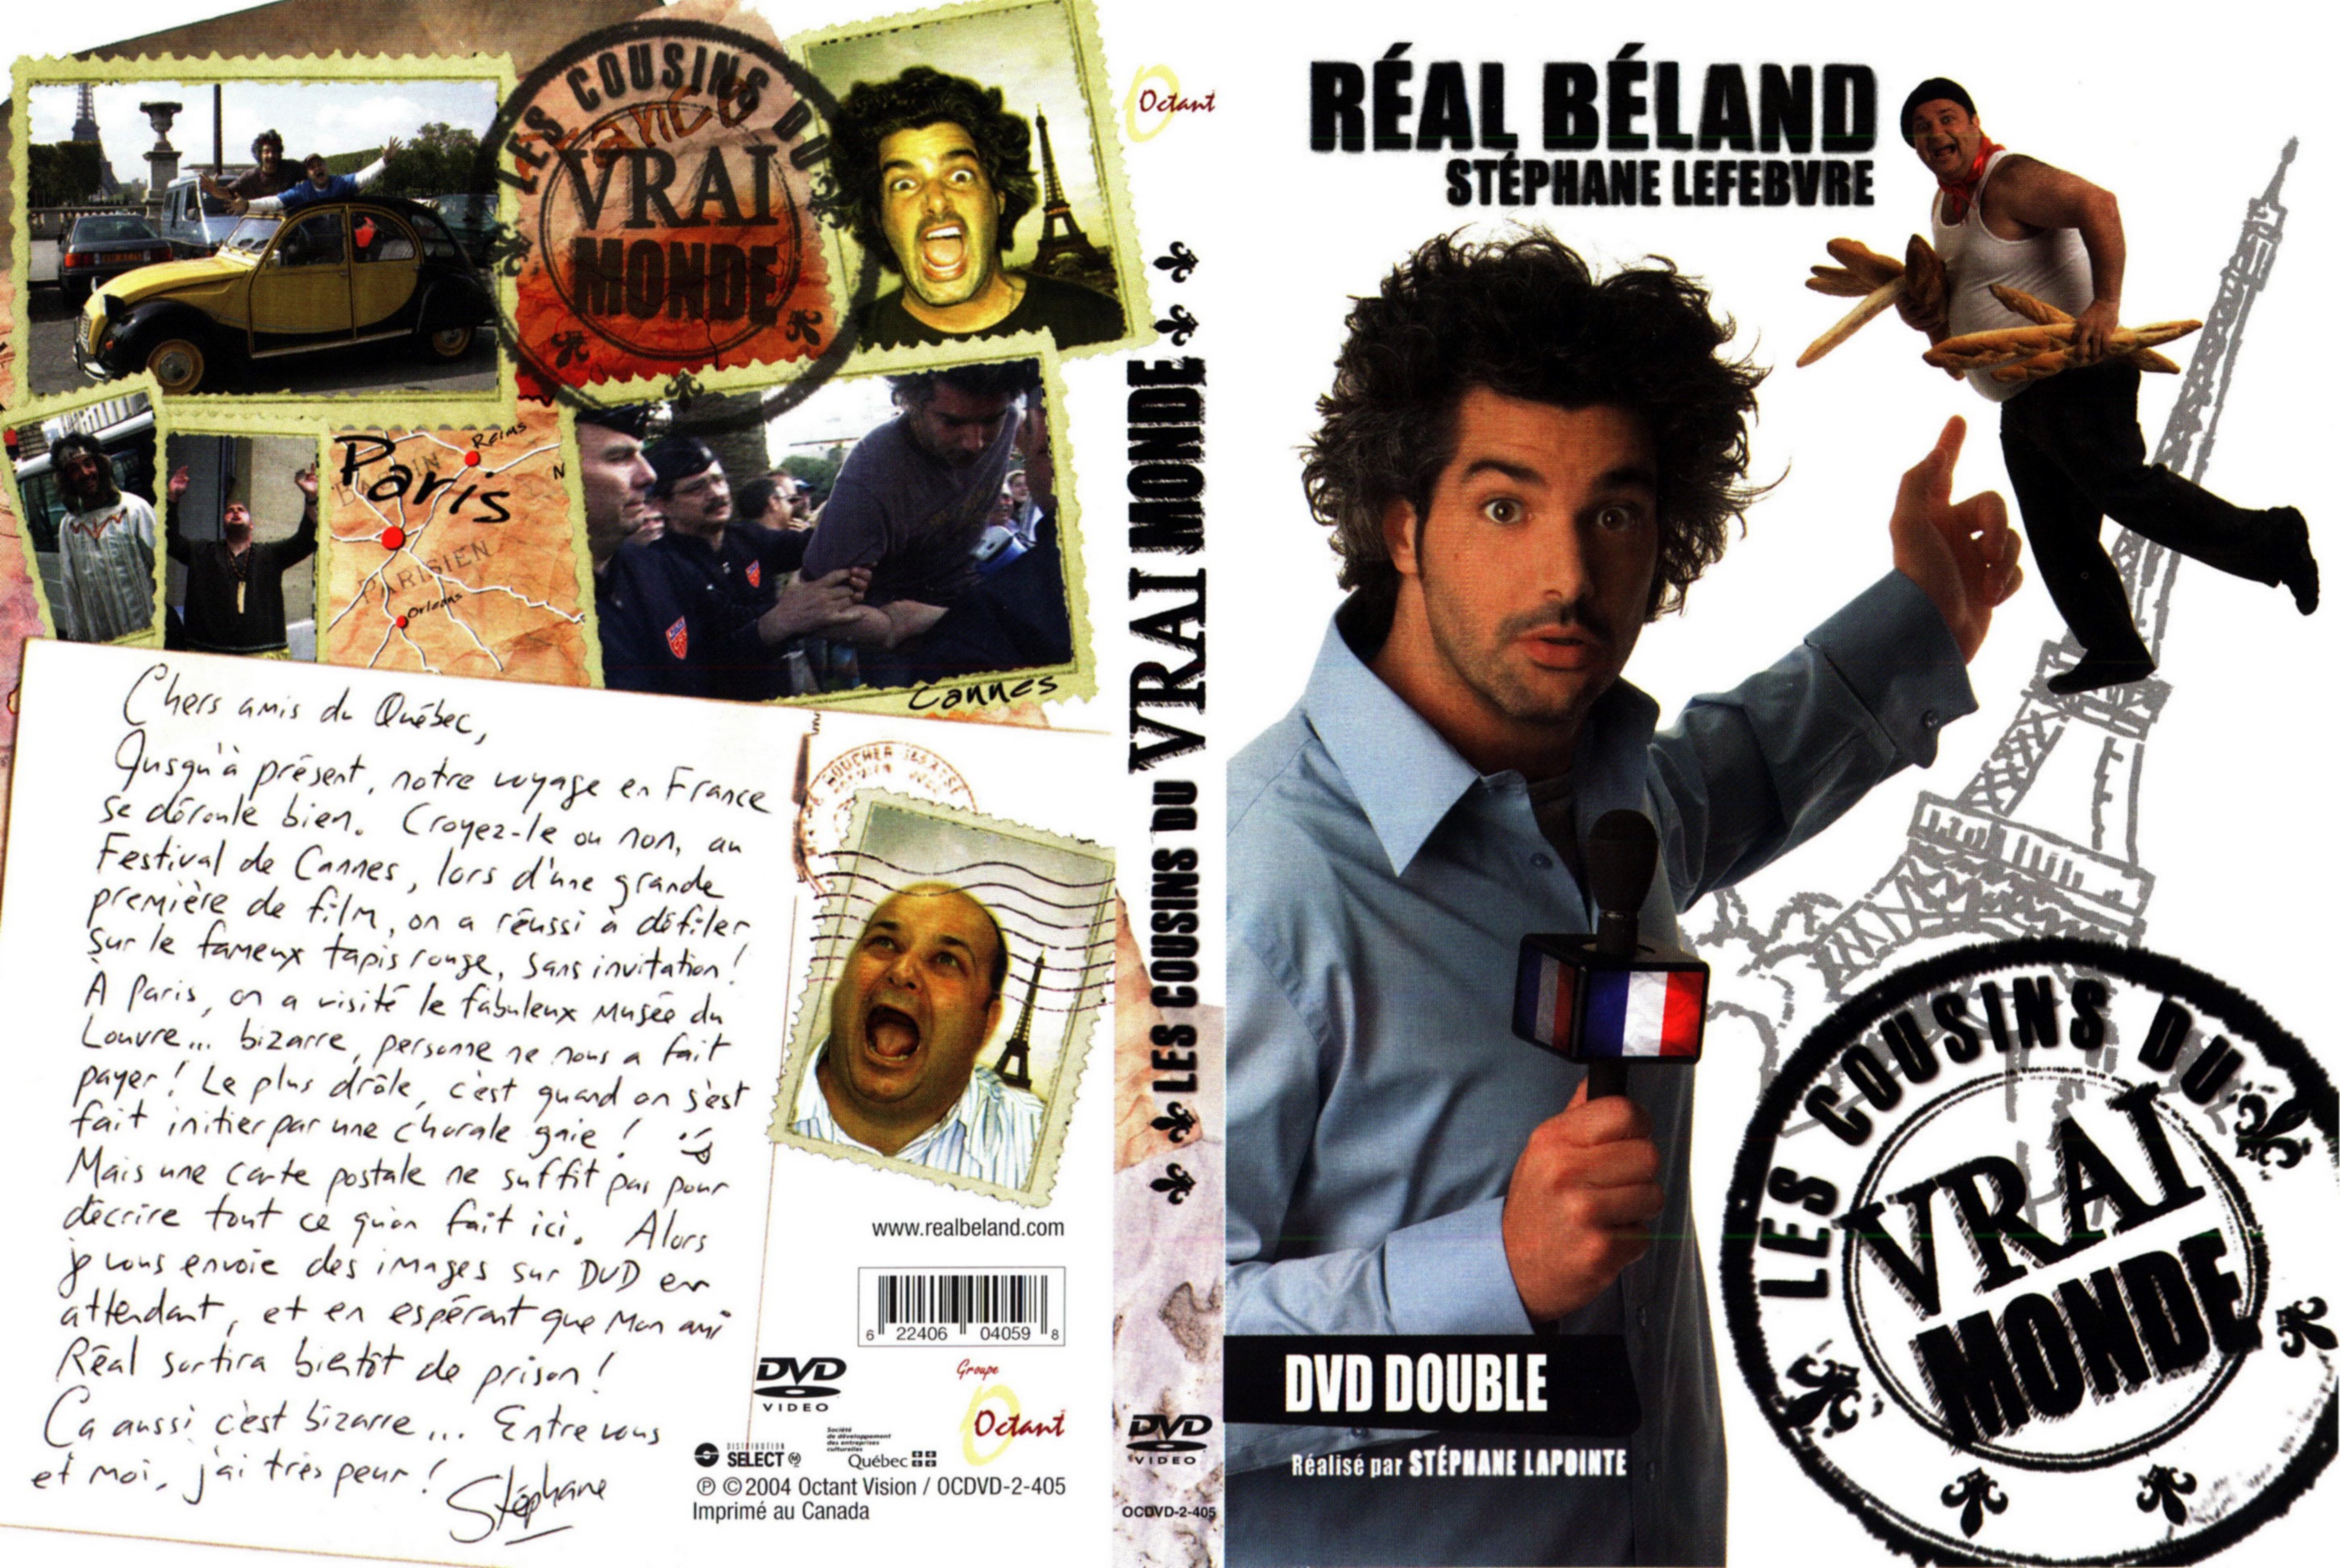 Jaquette DVD Real Beland Stephane Lefebvre Les cousins du vrai monde